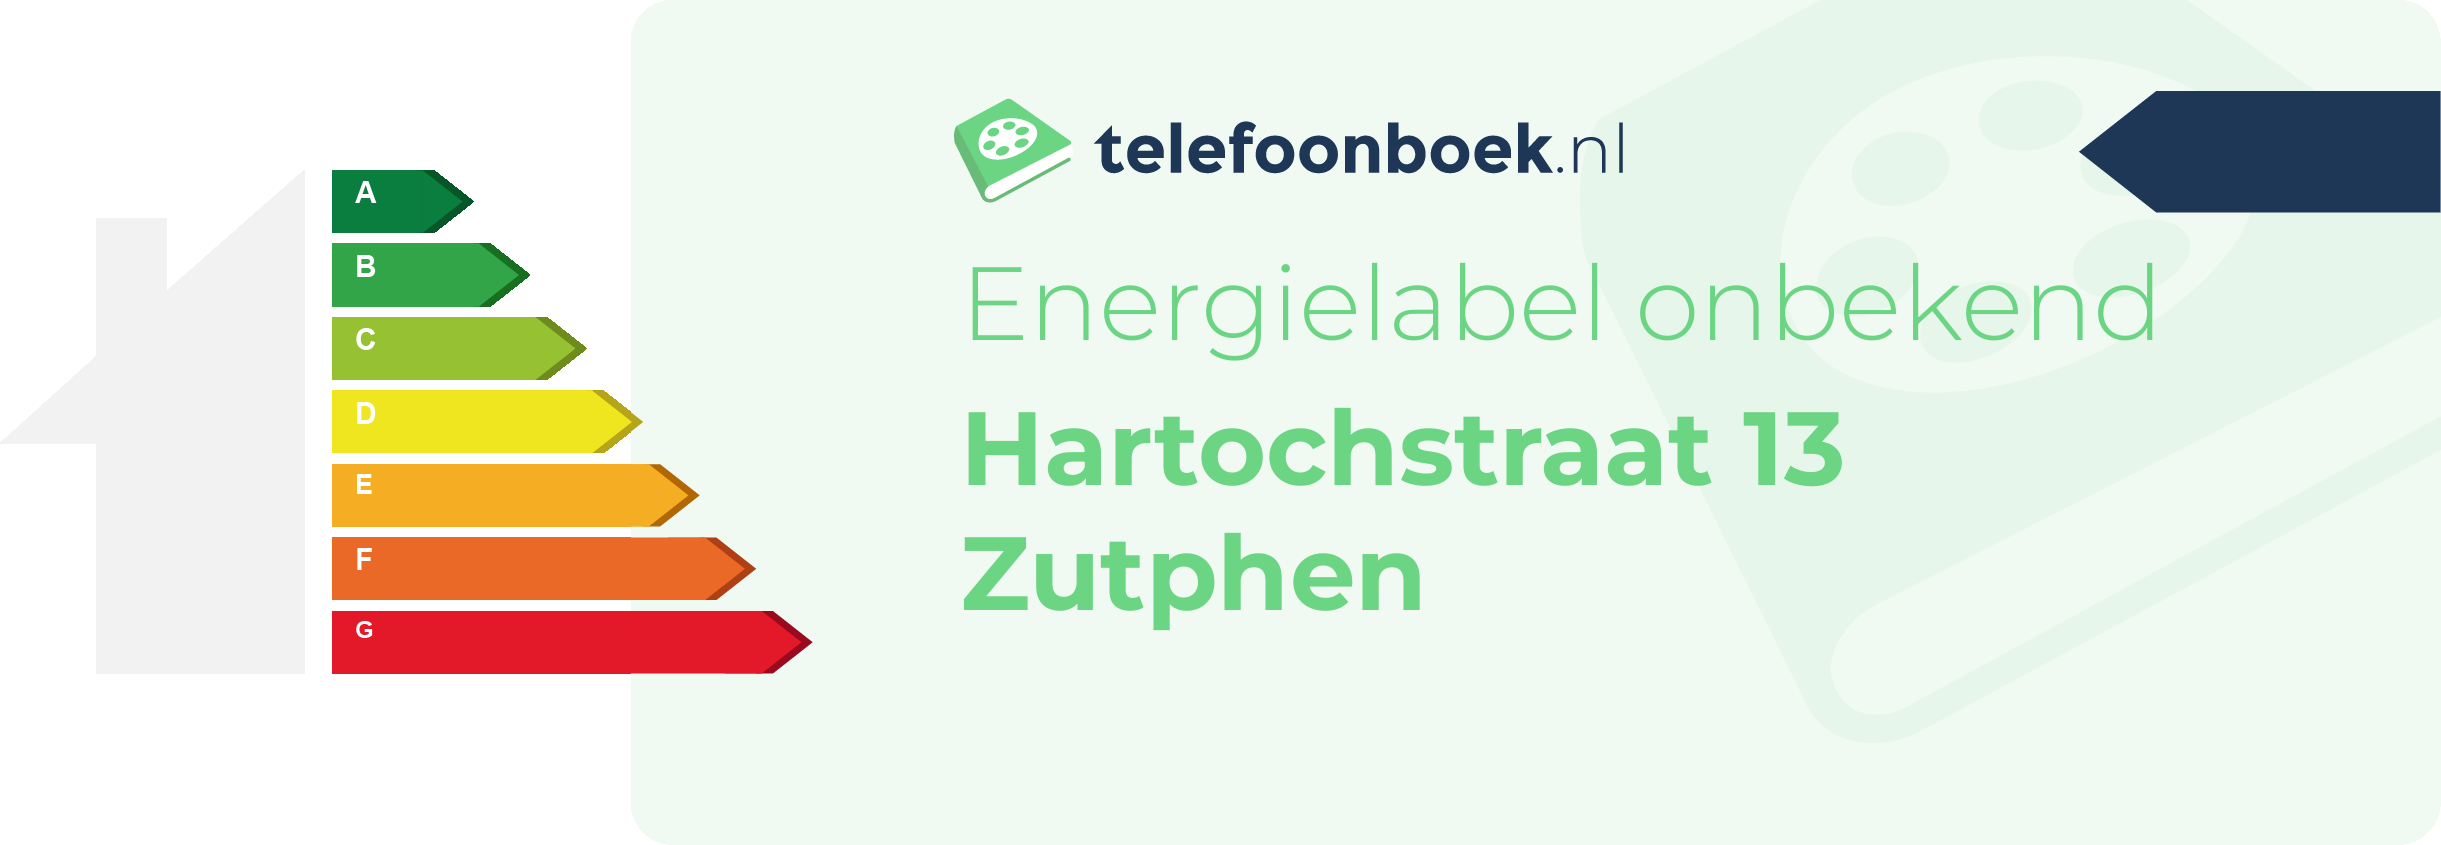 Energielabel Hartochstraat 13 Zutphen